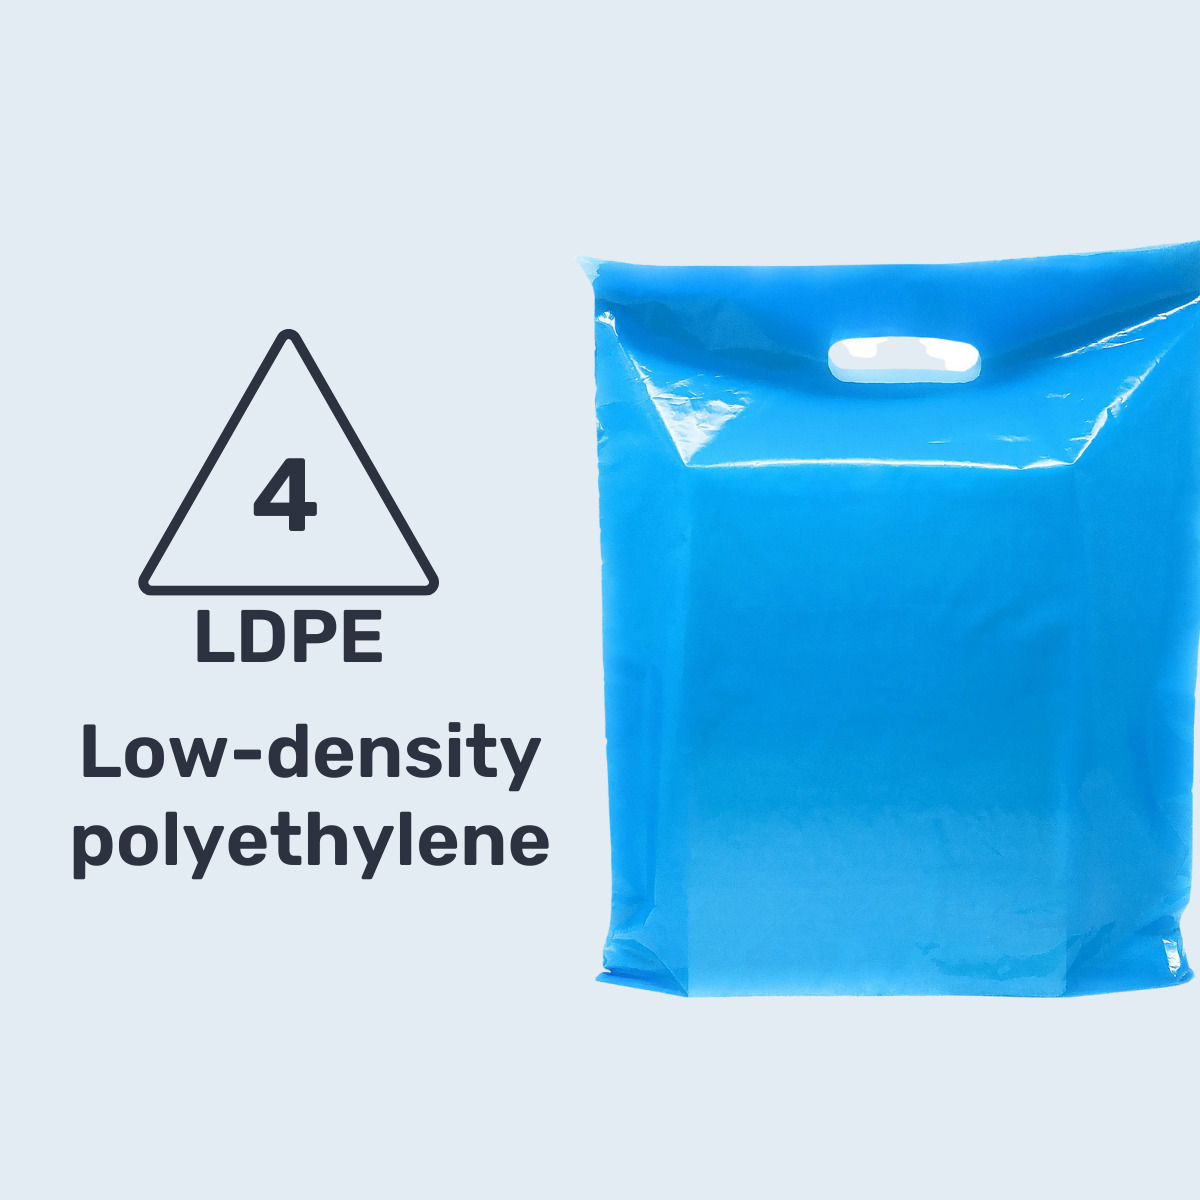 4 LDPE - Packaging Polymer Series